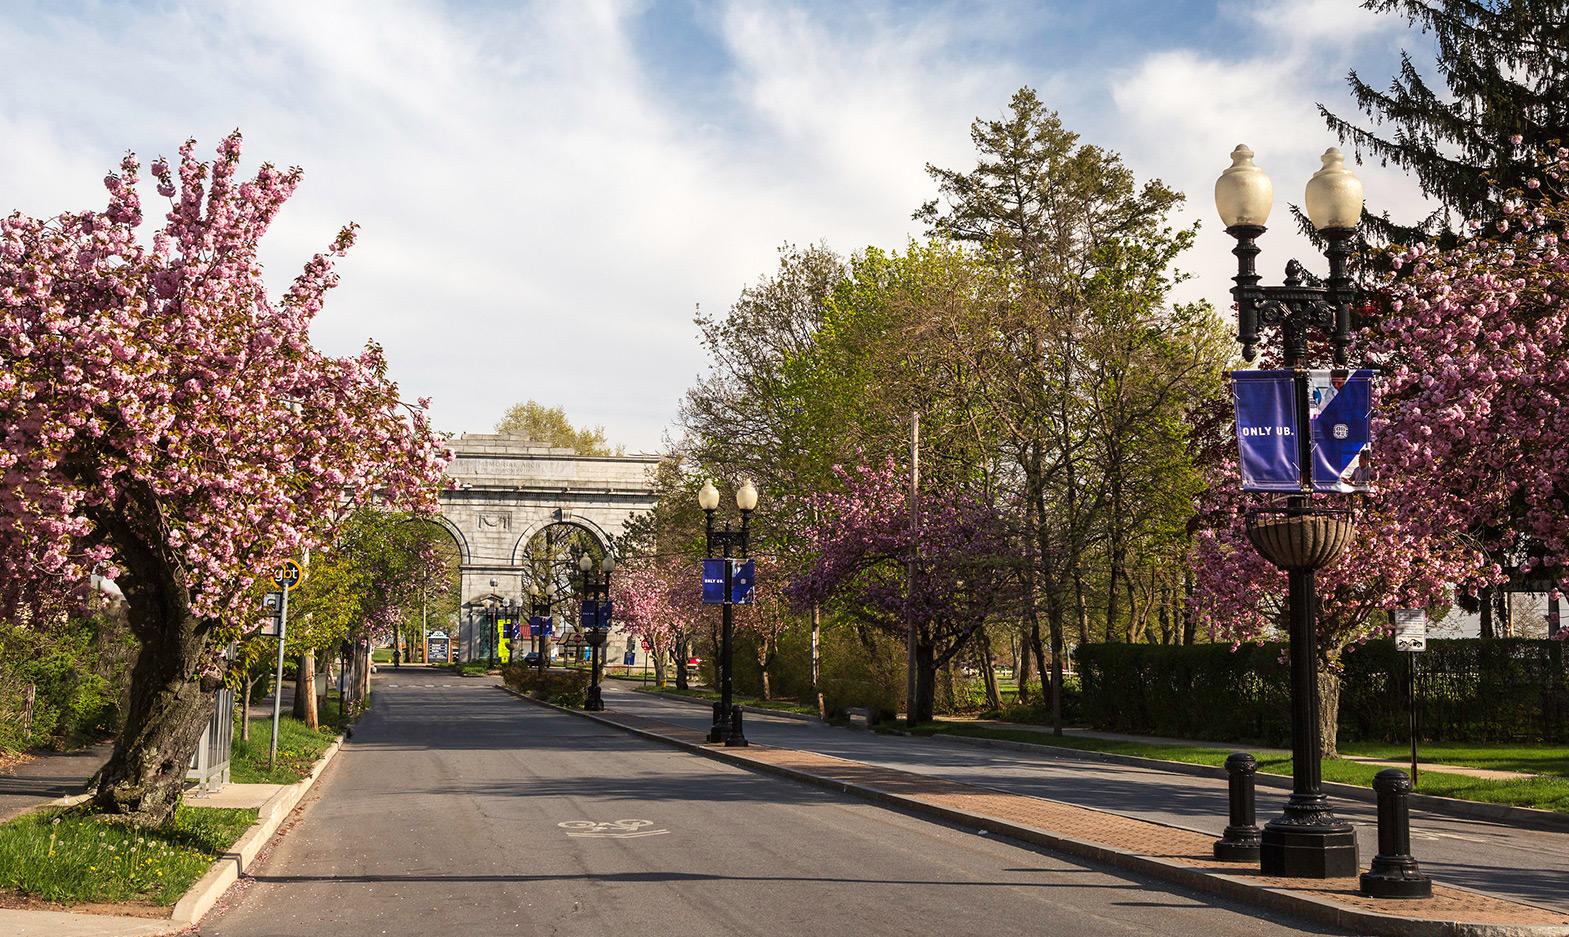 Street view of the University of Bridgeport